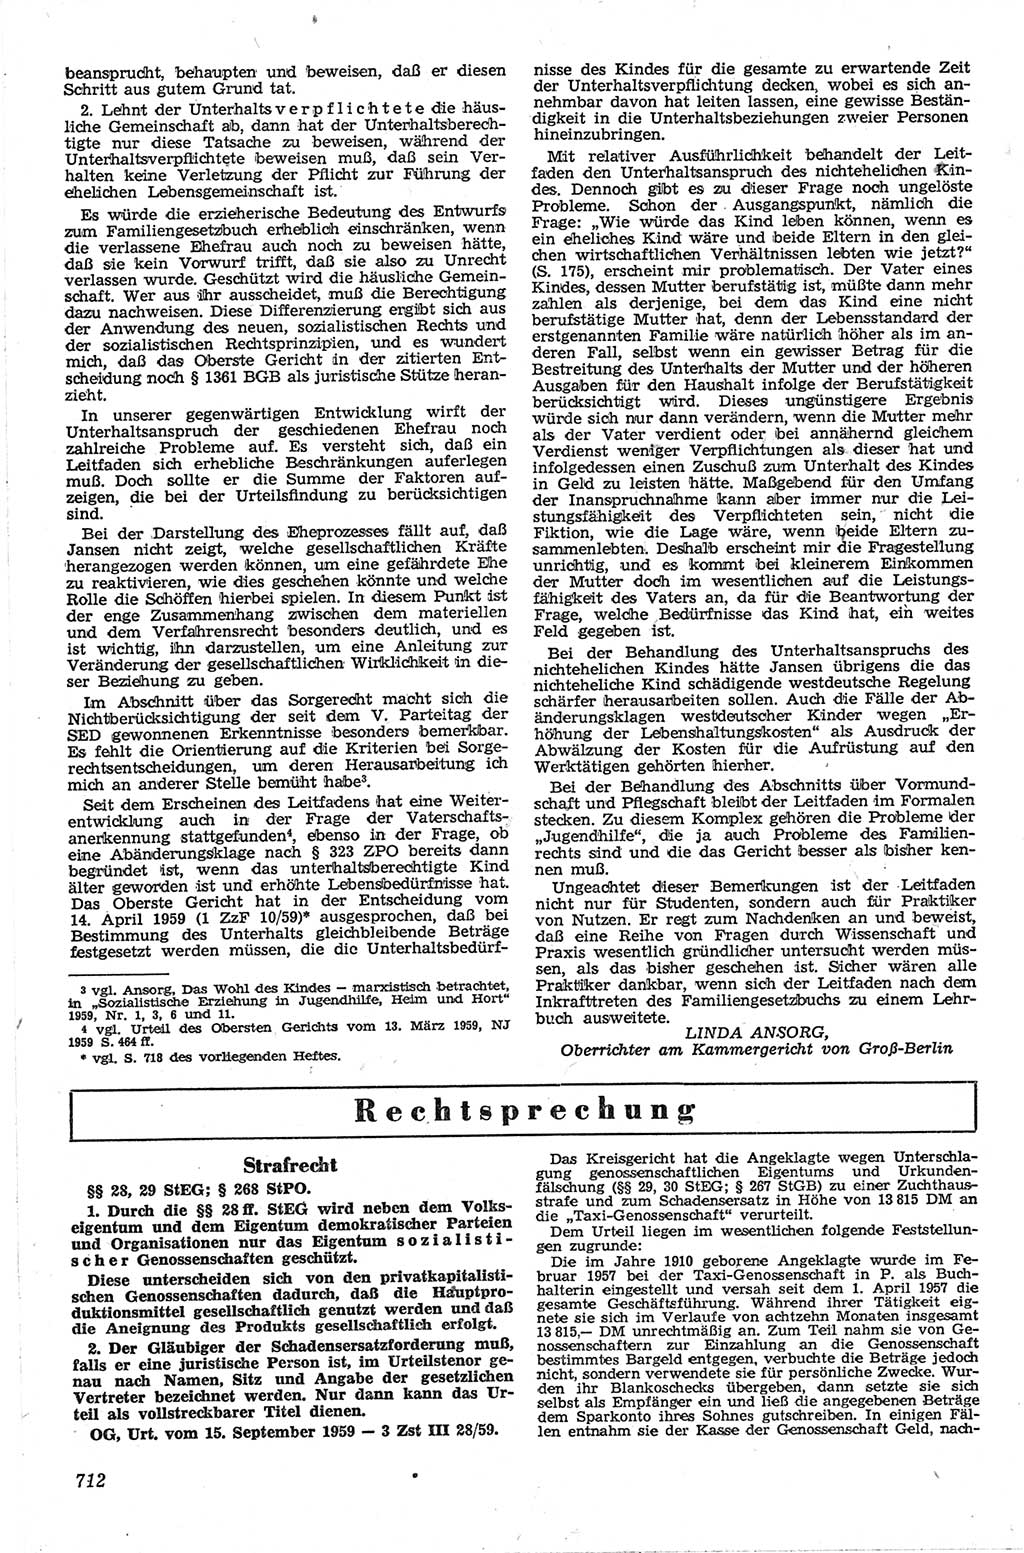 Neue Justiz (NJ), Zeitschrift für Recht und Rechtswissenschaft [Deutsche Demokratische Republik (DDR)], 13. Jahrgang 1959, Seite 712 (NJ DDR 1959, S. 712)